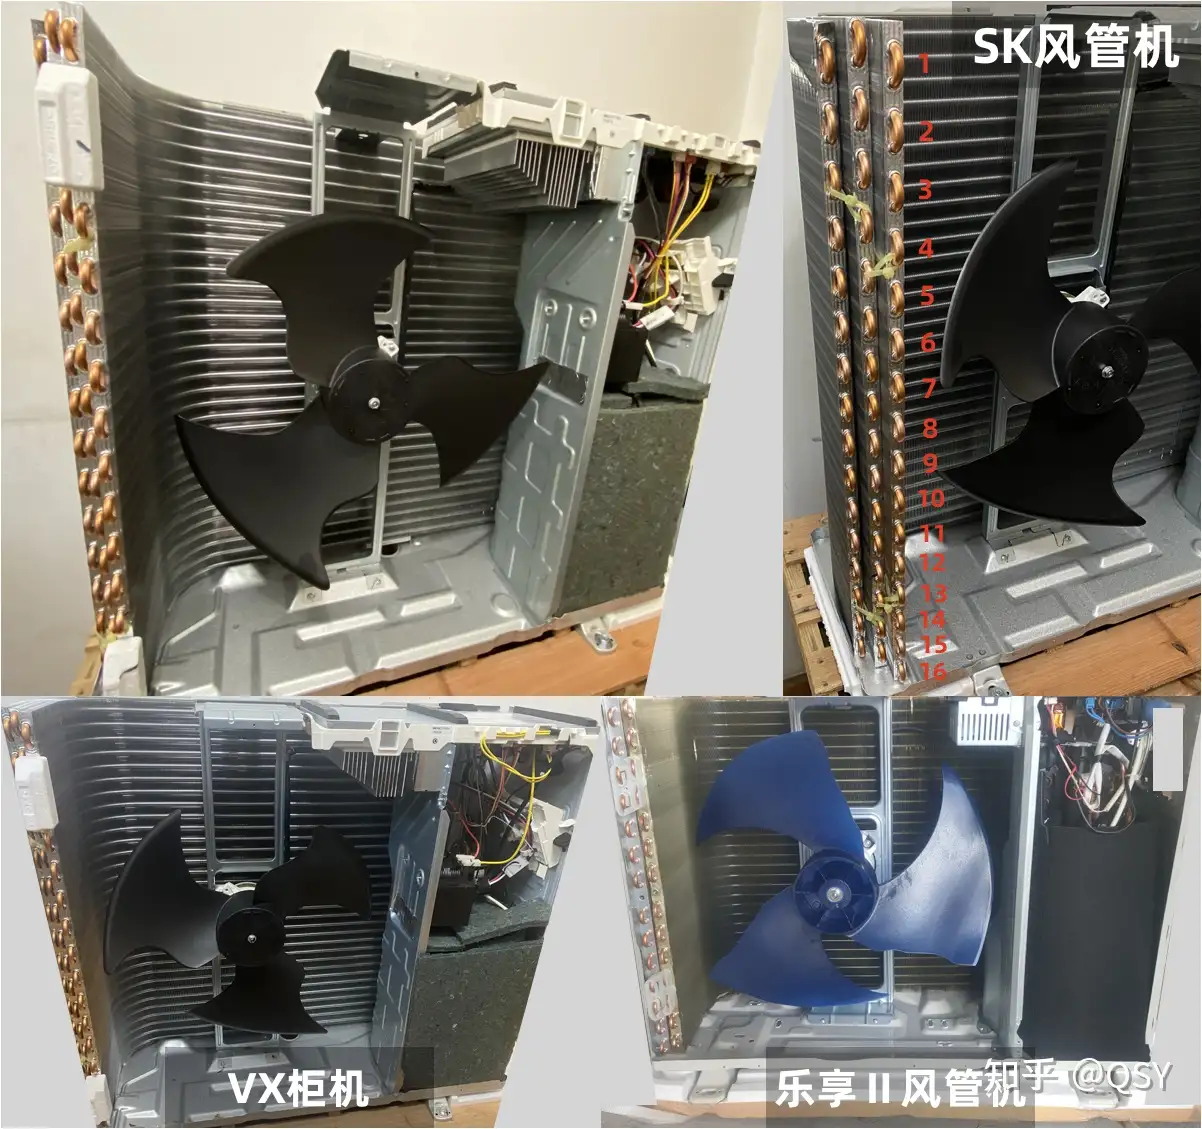 拆空调250丨三菱电机SK风管机3匹外机三排铜管可能是最强3匹风管机- 知乎